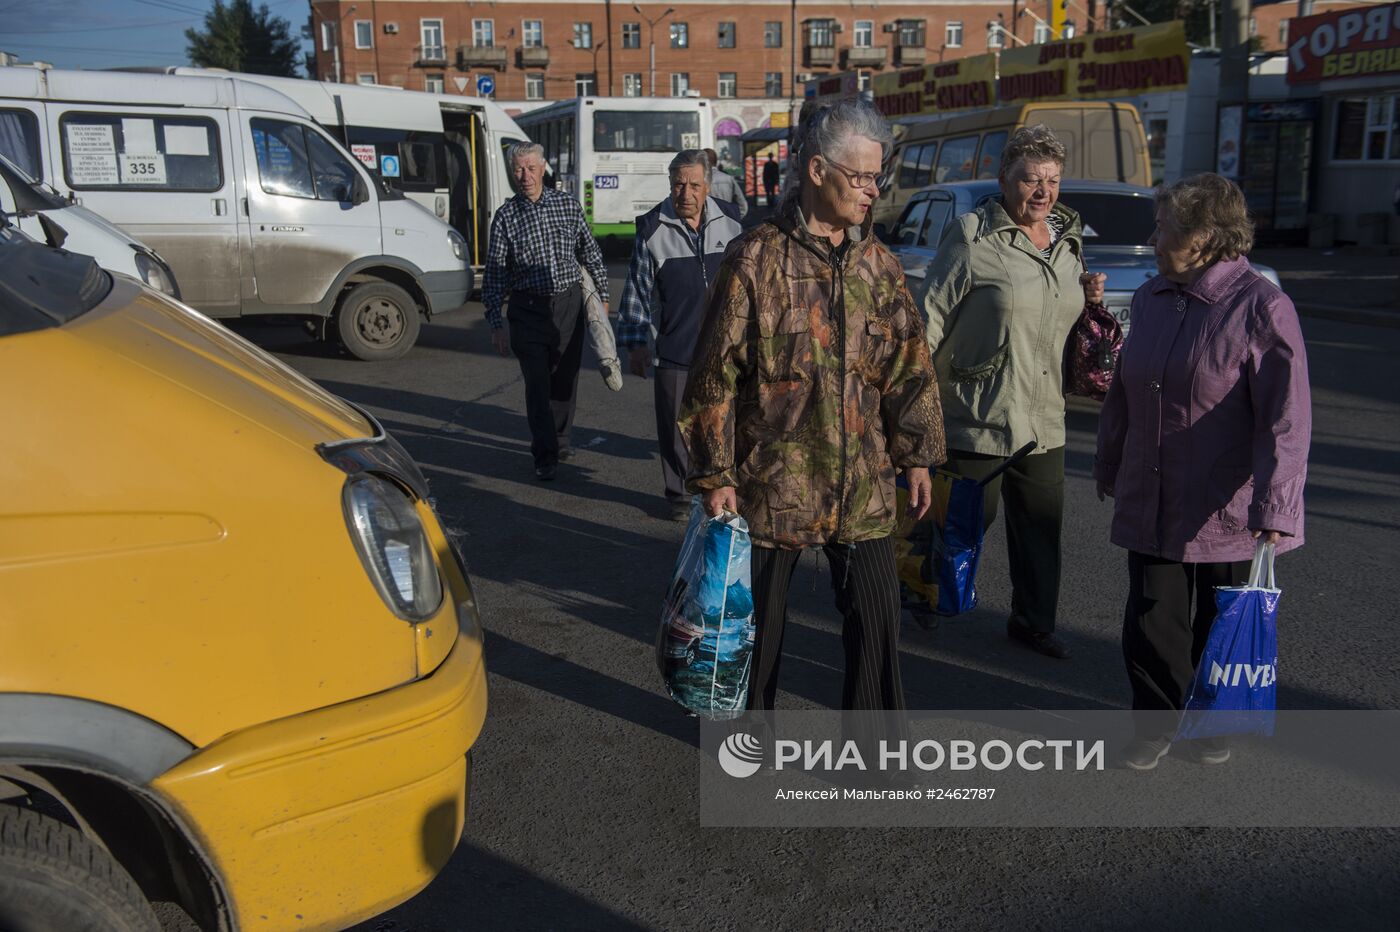 Работа водителя маршрутного такси в Омске